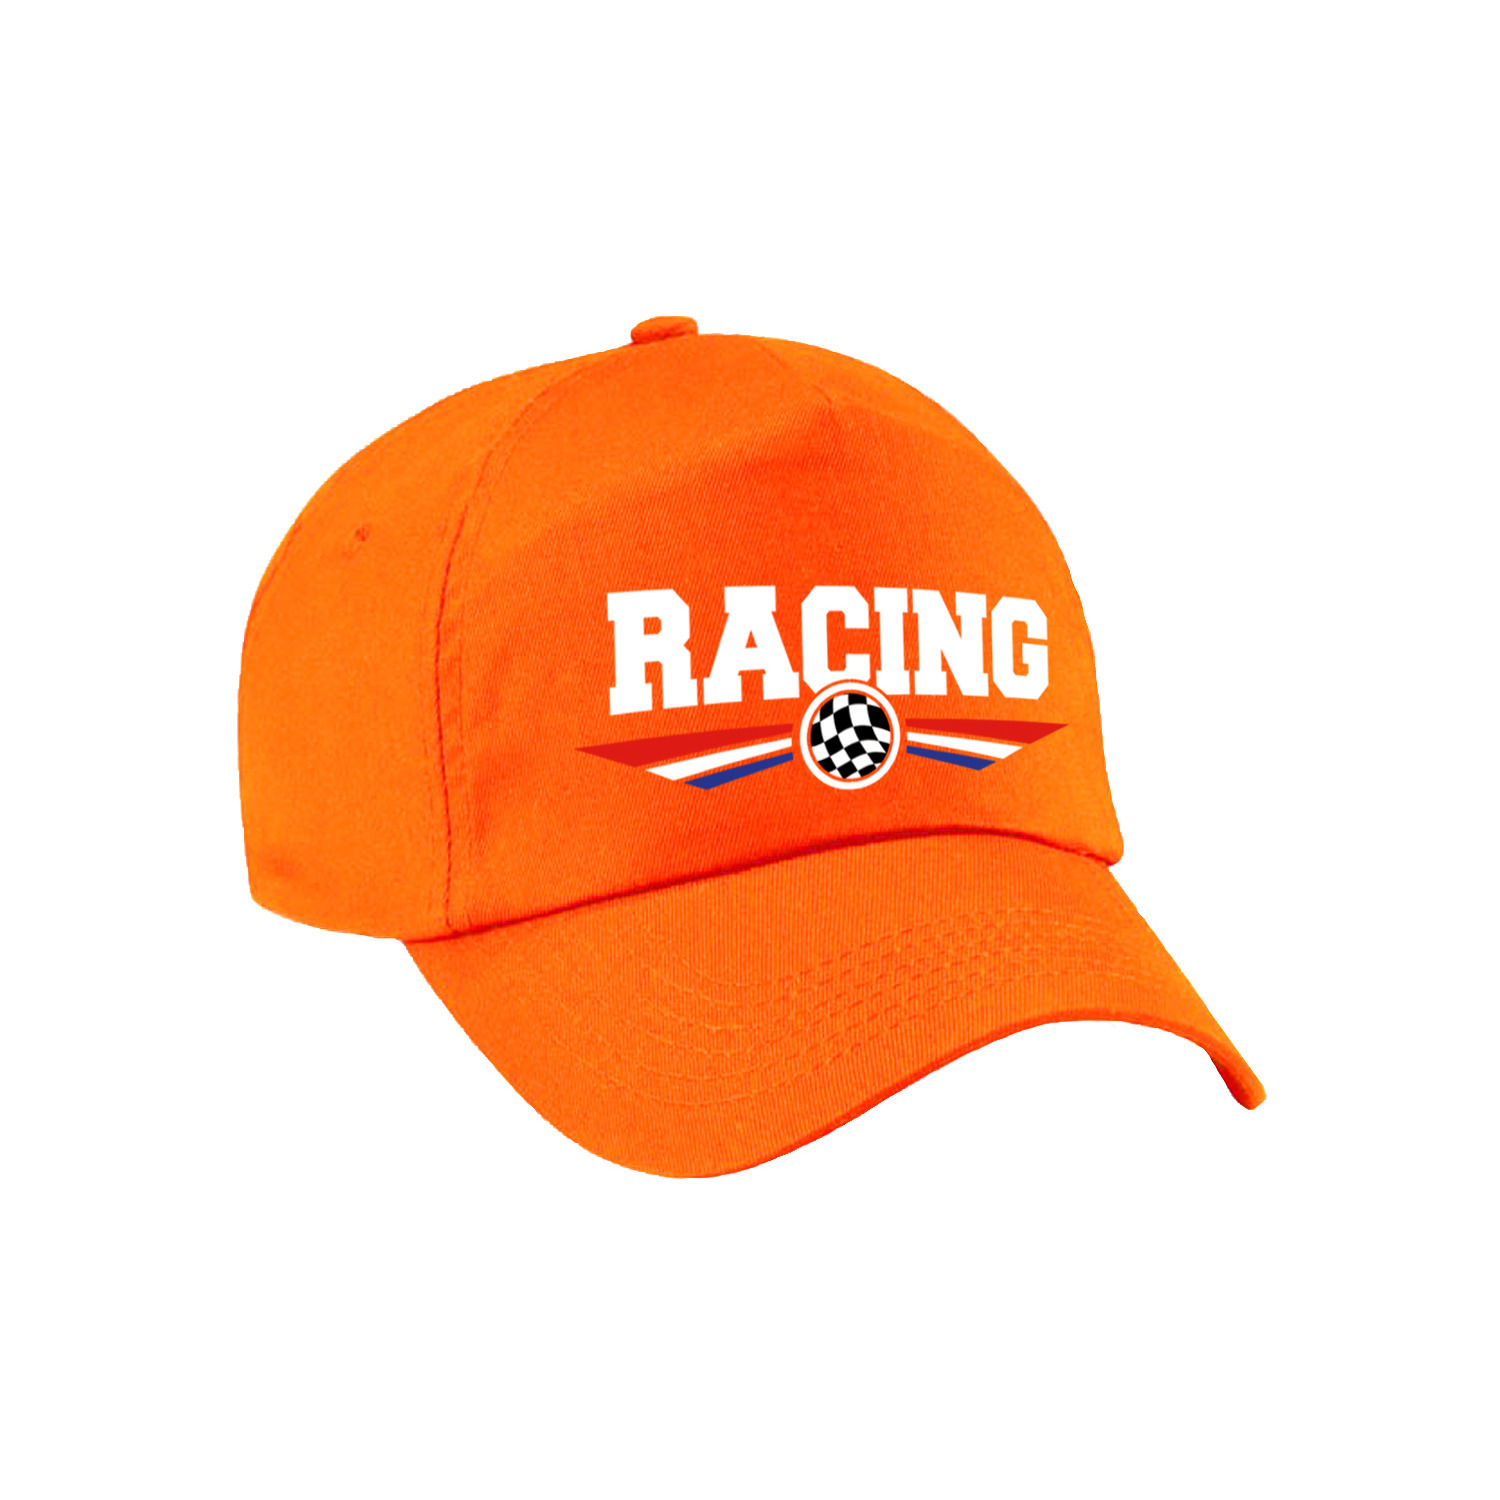 Racing coureur supporter pet / baseball cap met Nederlandse vlag oranje voor volwassenen